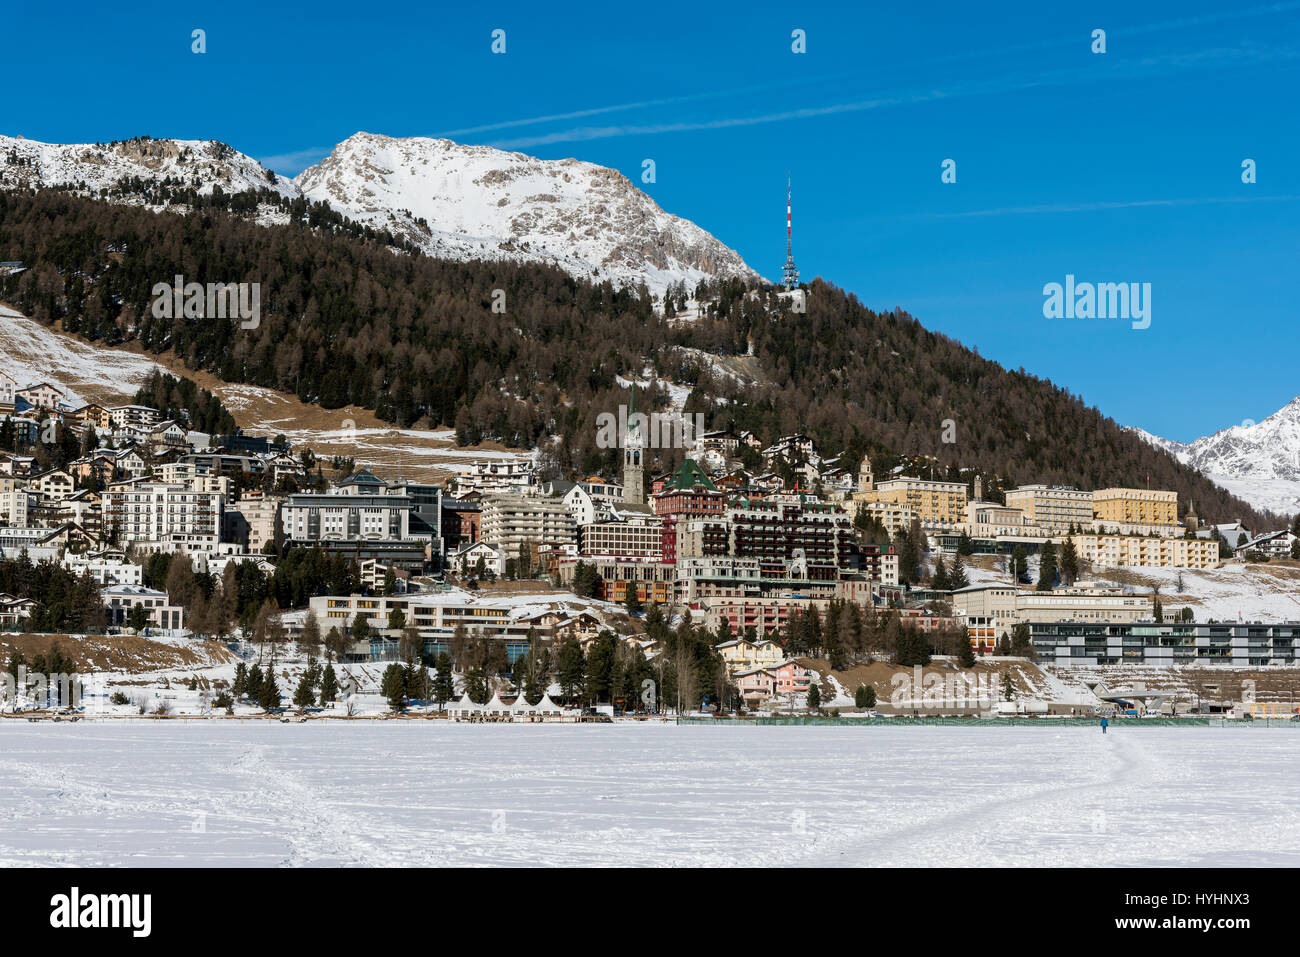 Vue d'hiver de Saint-Moritz à partir de son lac gelé, Grisons, Suisse Banque D'Images